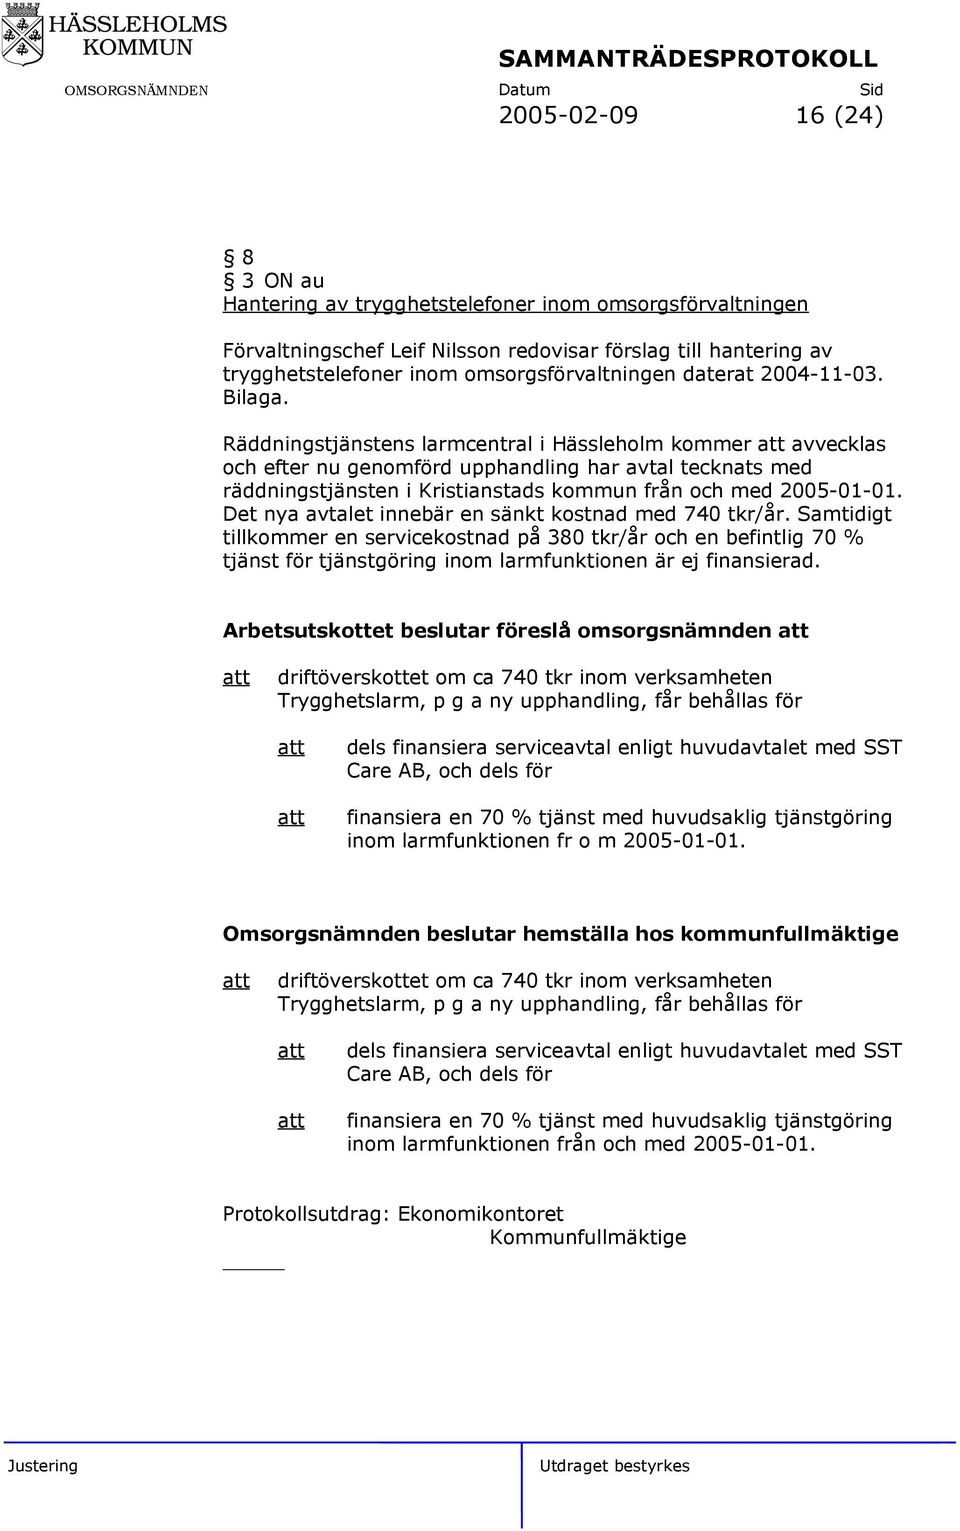 Räddningstjänstens larmcentral i Hässleholm kommer avvecklas och efter nu genomförd upphandling har avtal tecknats med räddningstjänsten i Kristianstads kommun från och med 2005-01-01.